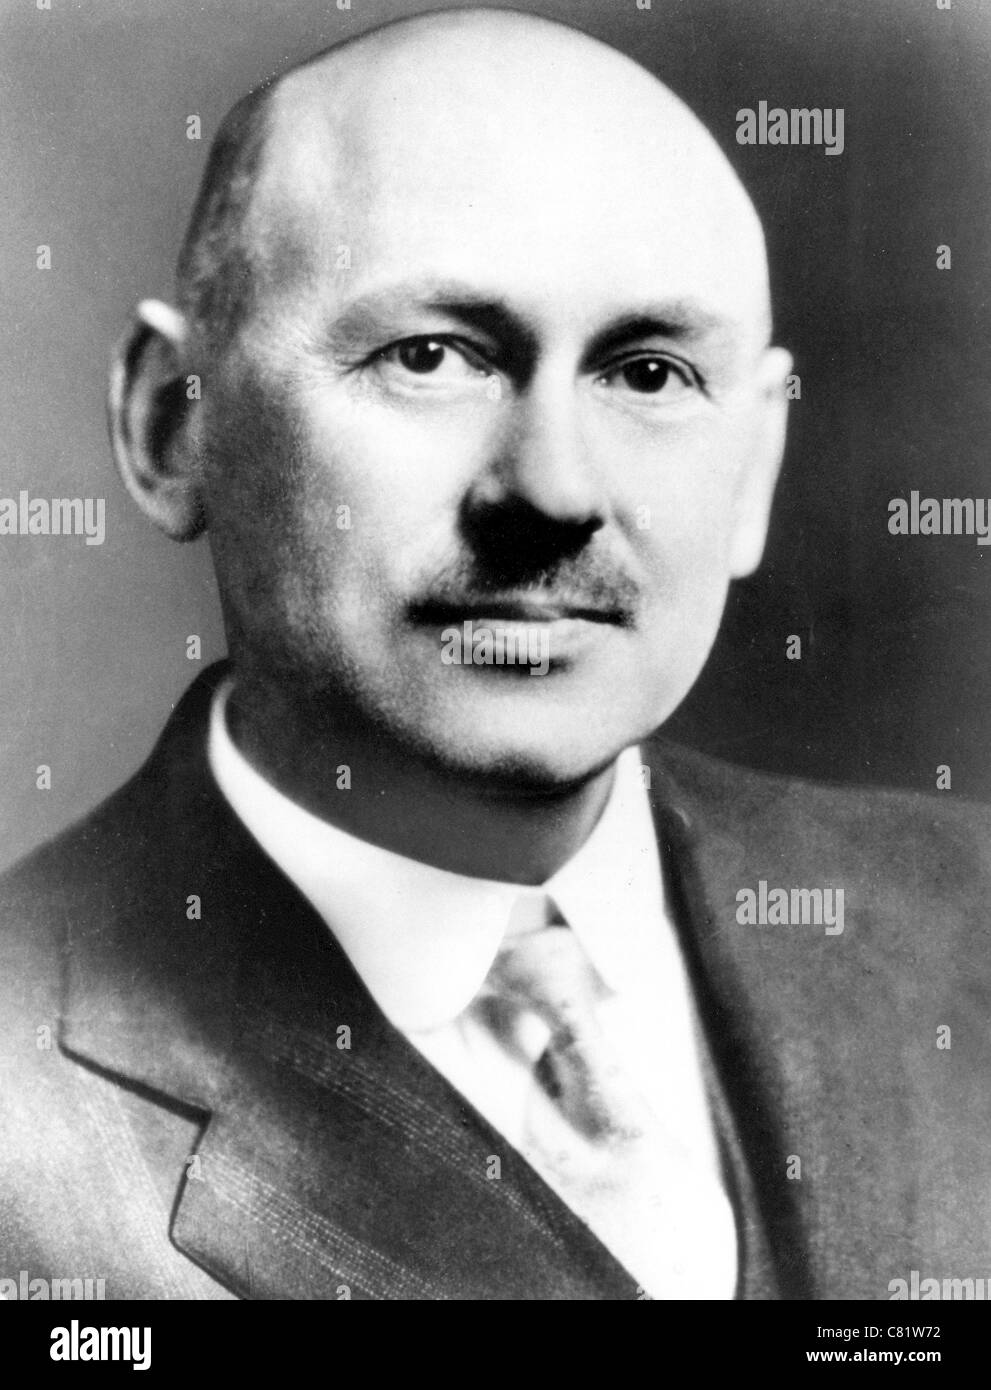 ROBERT GODDARD (1882-1945), físico estadounidense e inventor del mundo, el primer cohete de combustible líquido Foto de stock